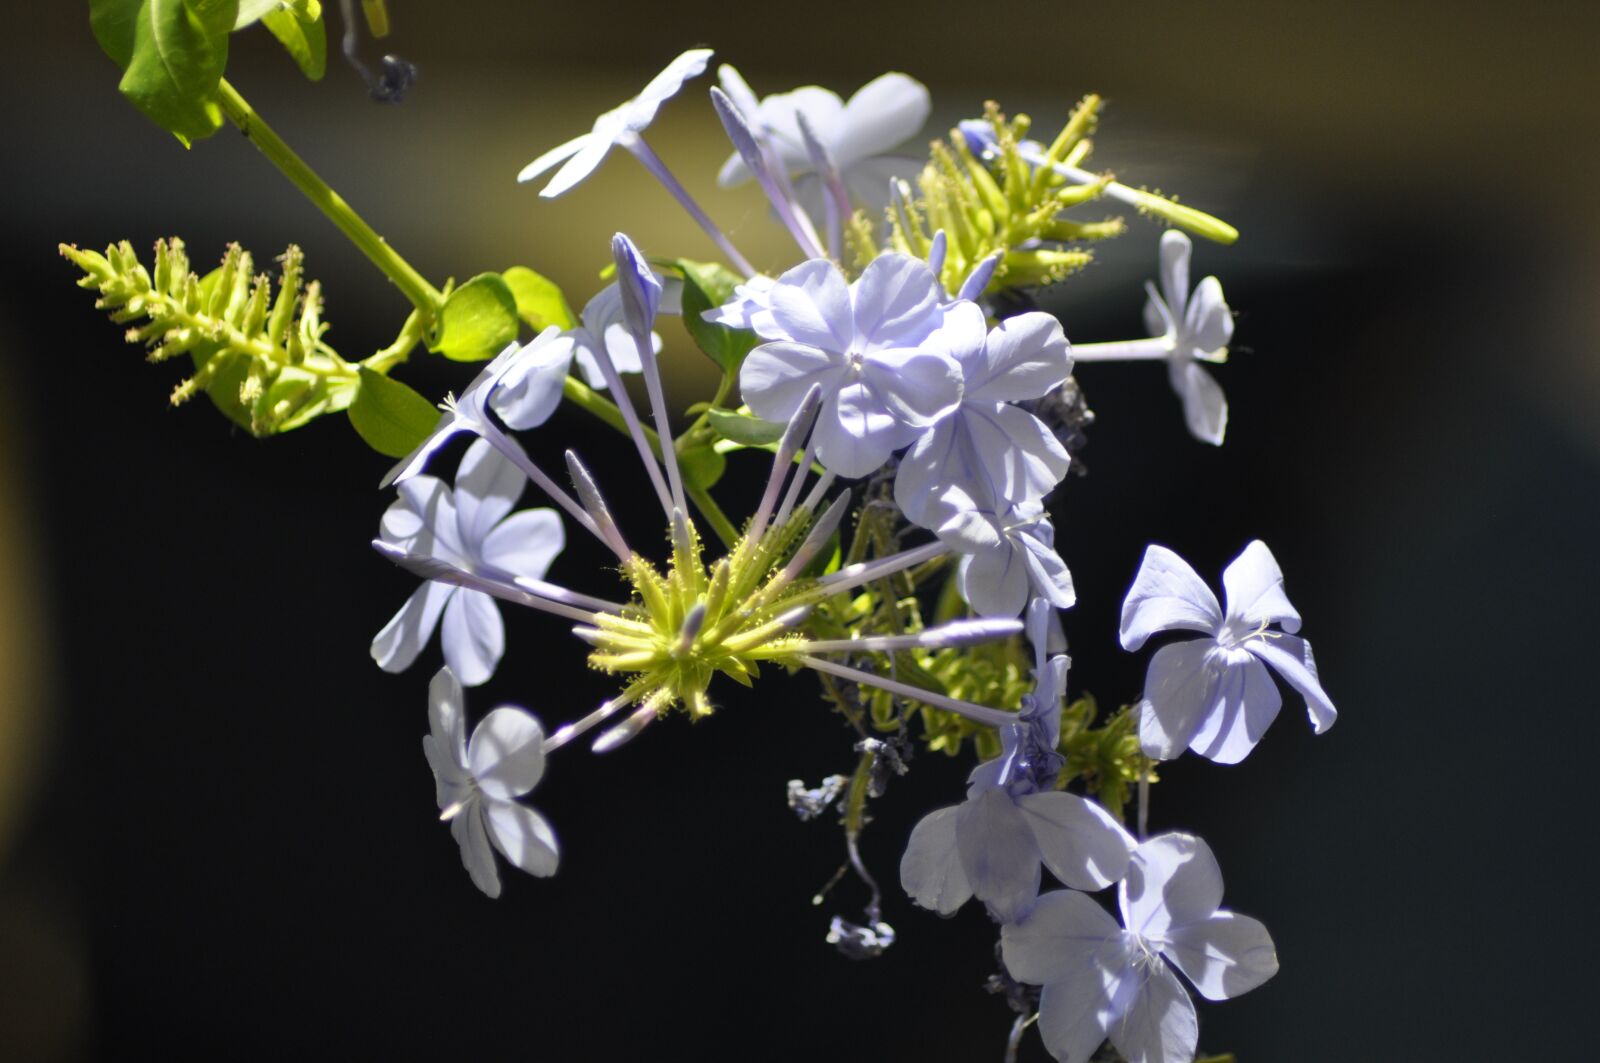 Nikon D90 sample photo. Plumbago, flower, nature photography